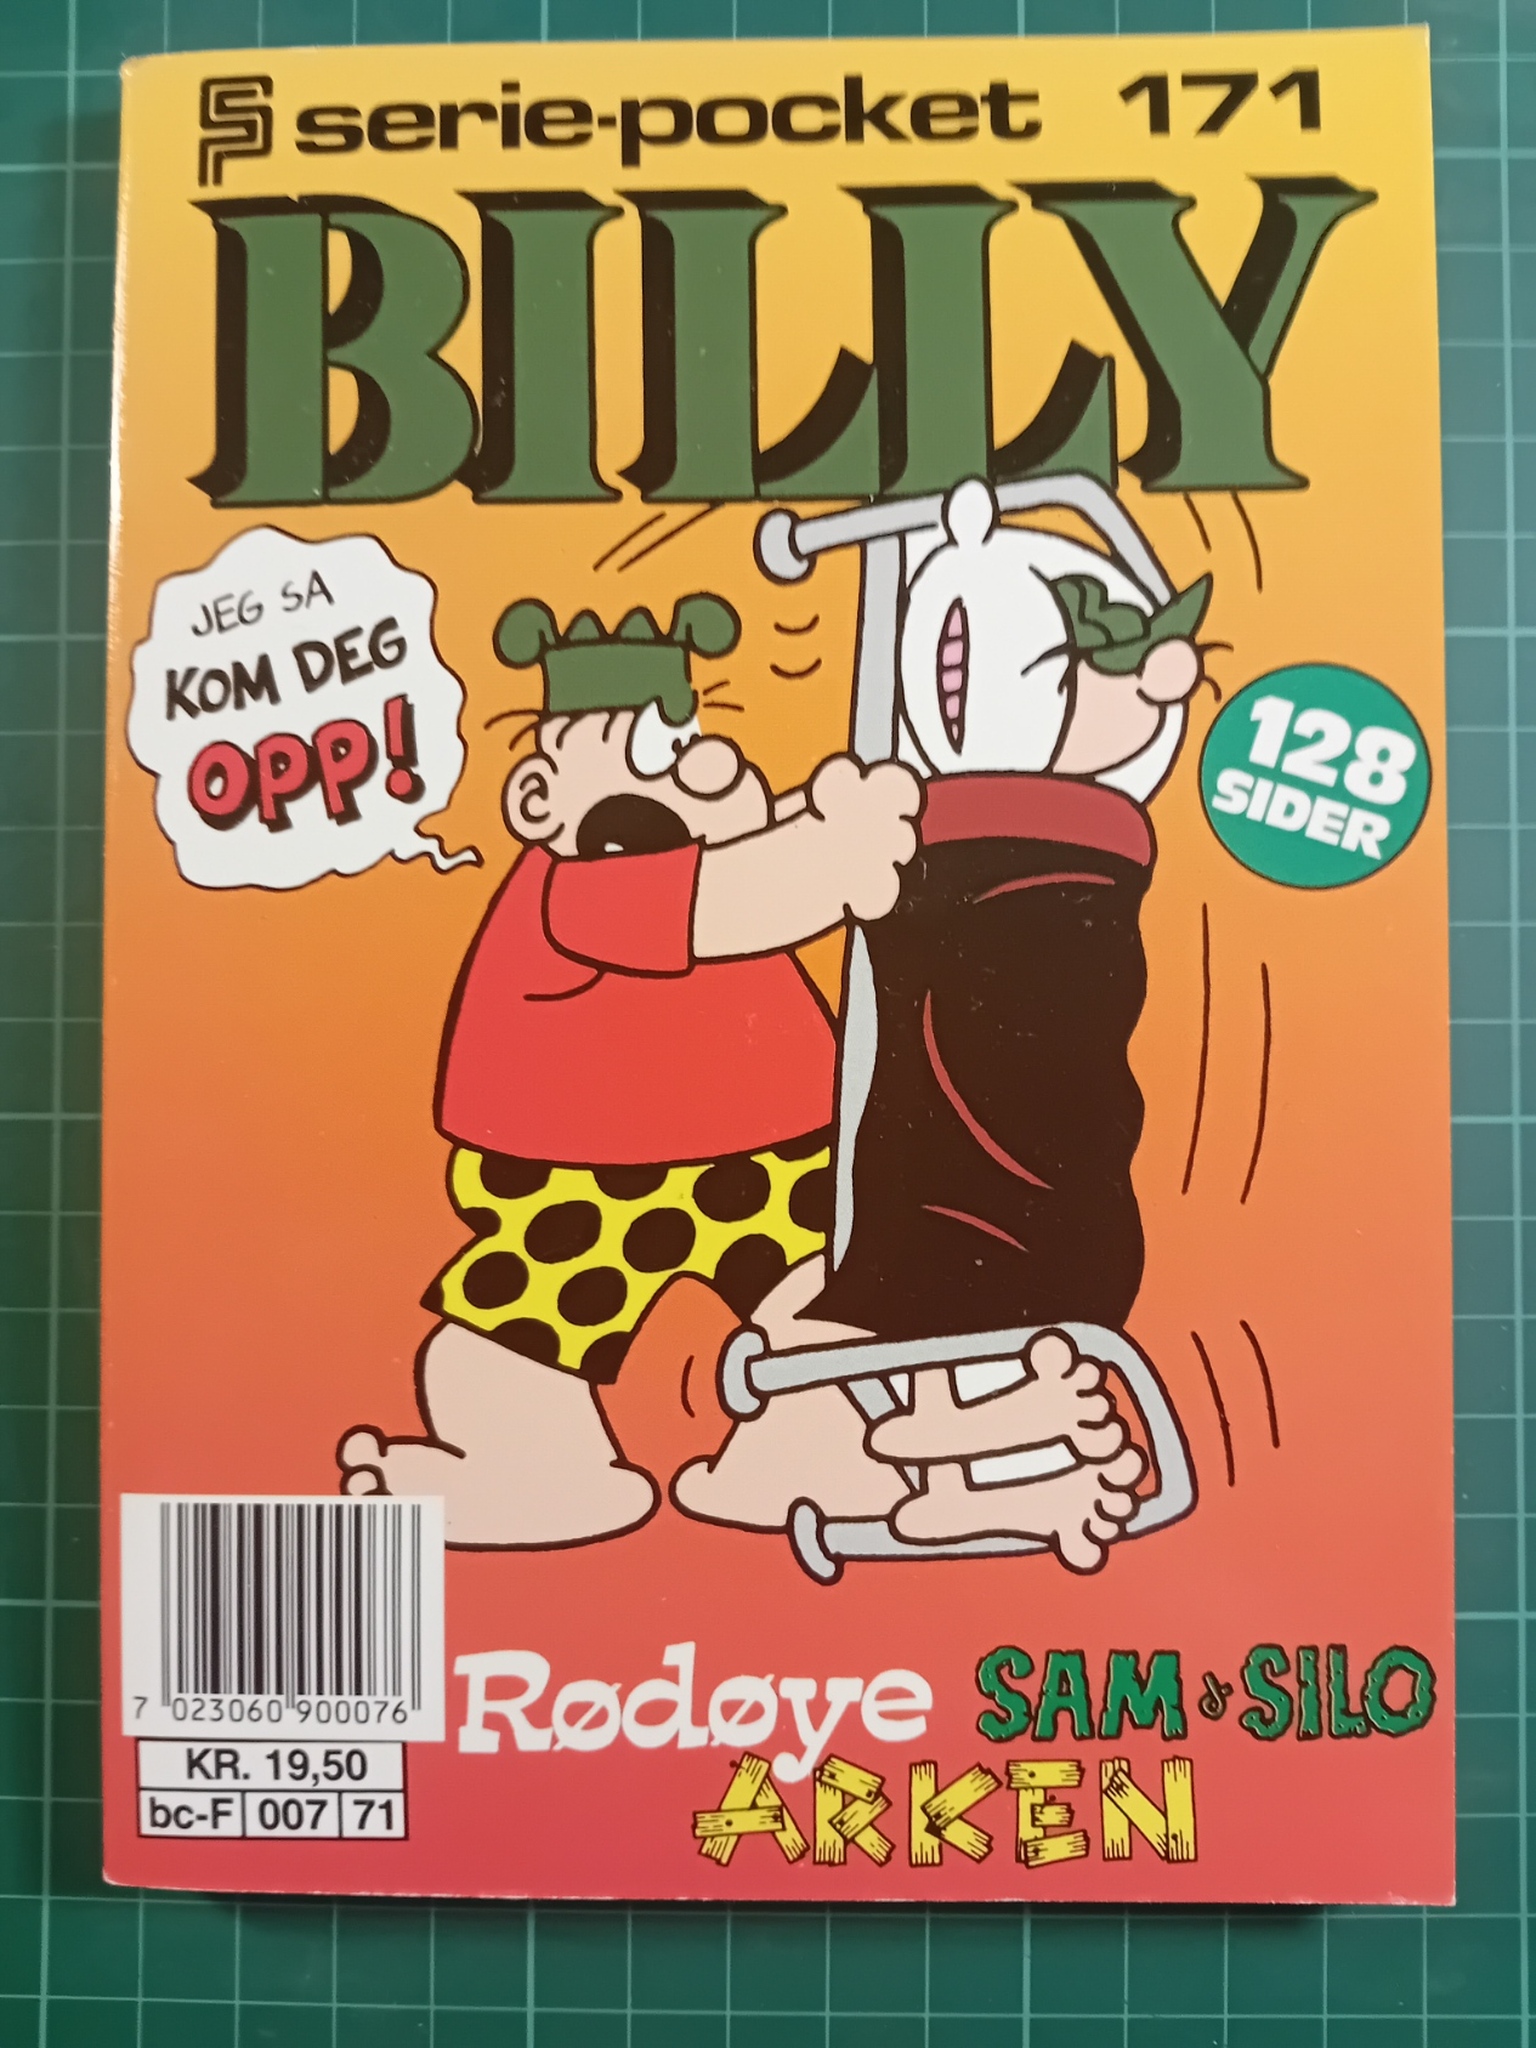 Serie-pocket 171 : Billy